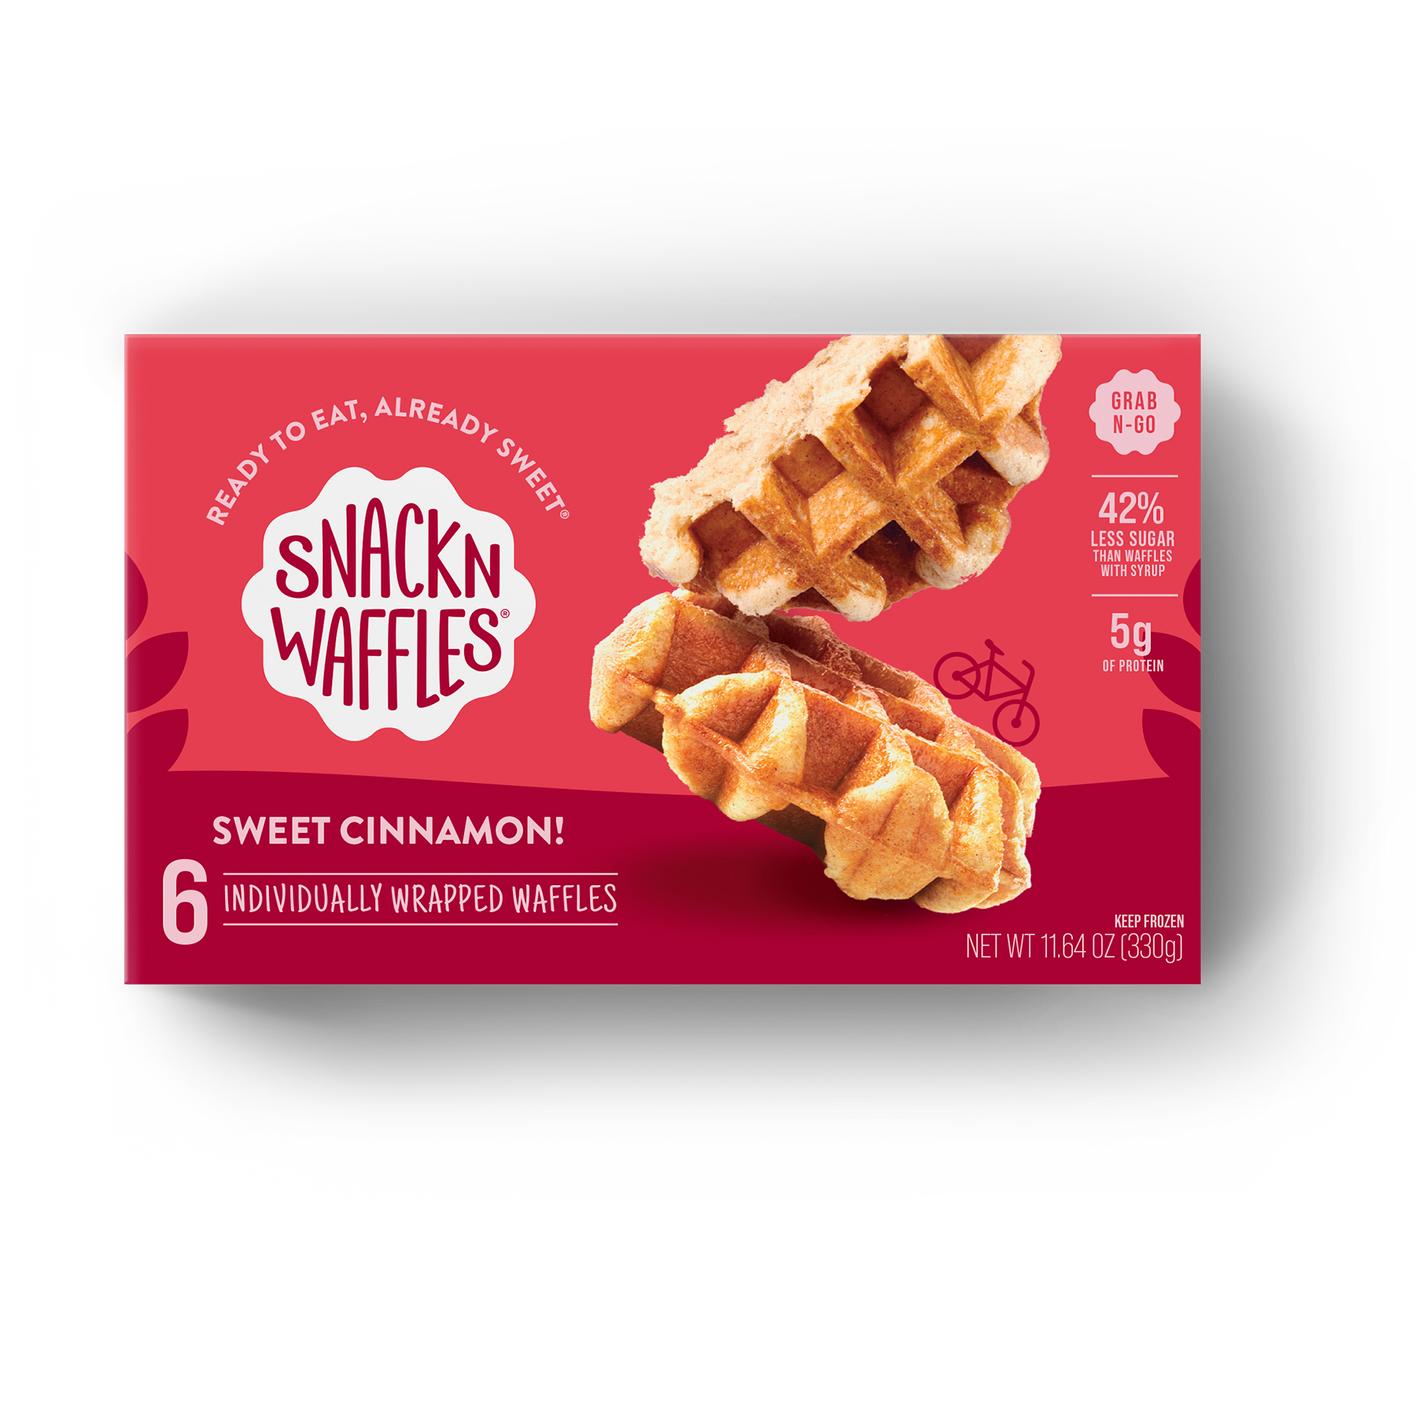 Sweet Cinnamon! – Snack'n Waffles